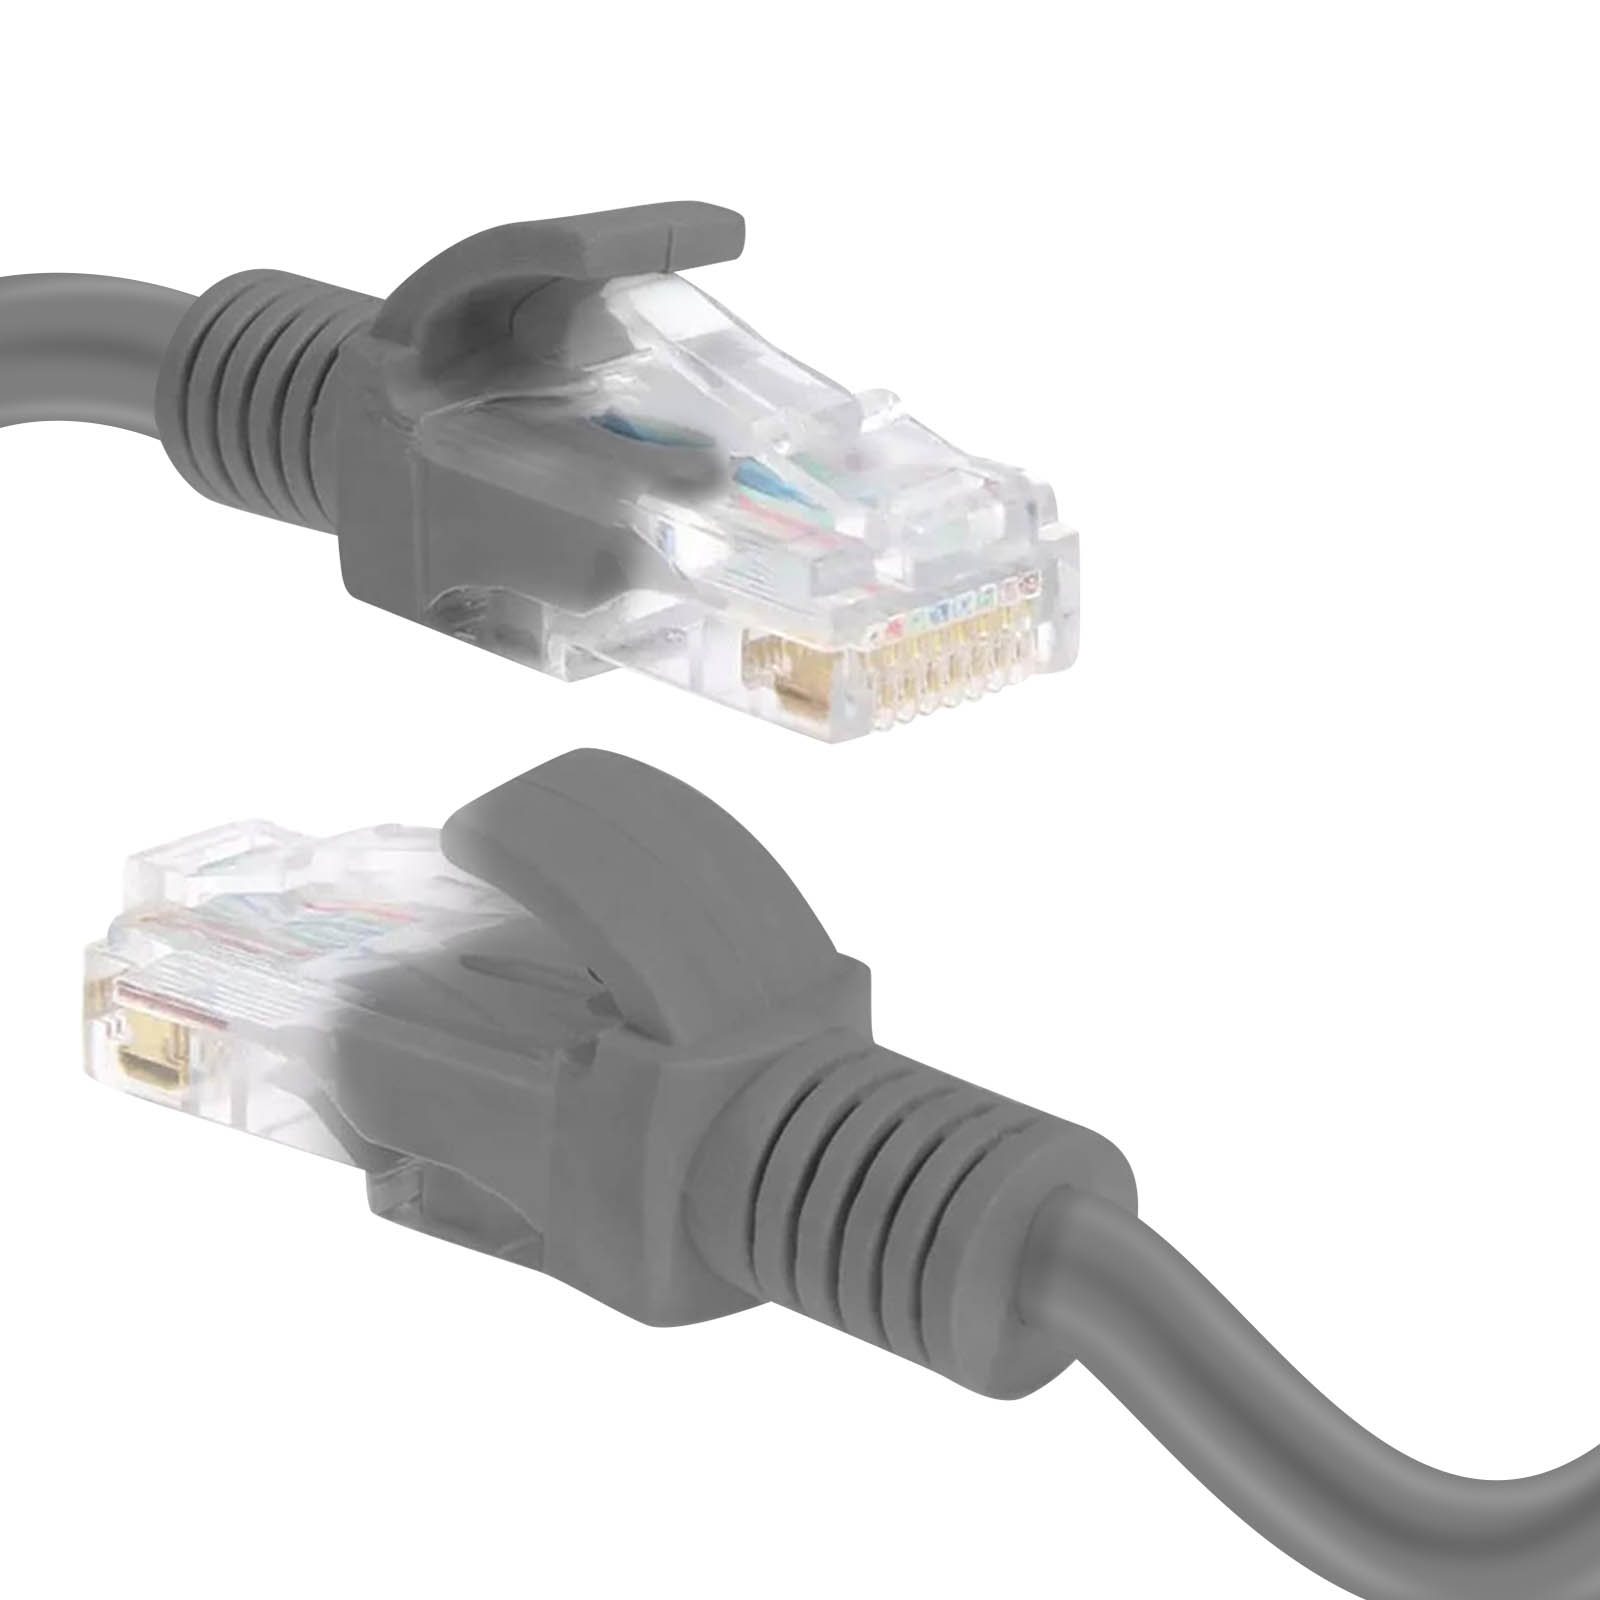 LINQ RJ45 Ethernet, CAT6, 1.8m, Kabel, m 1,8 Ethernet